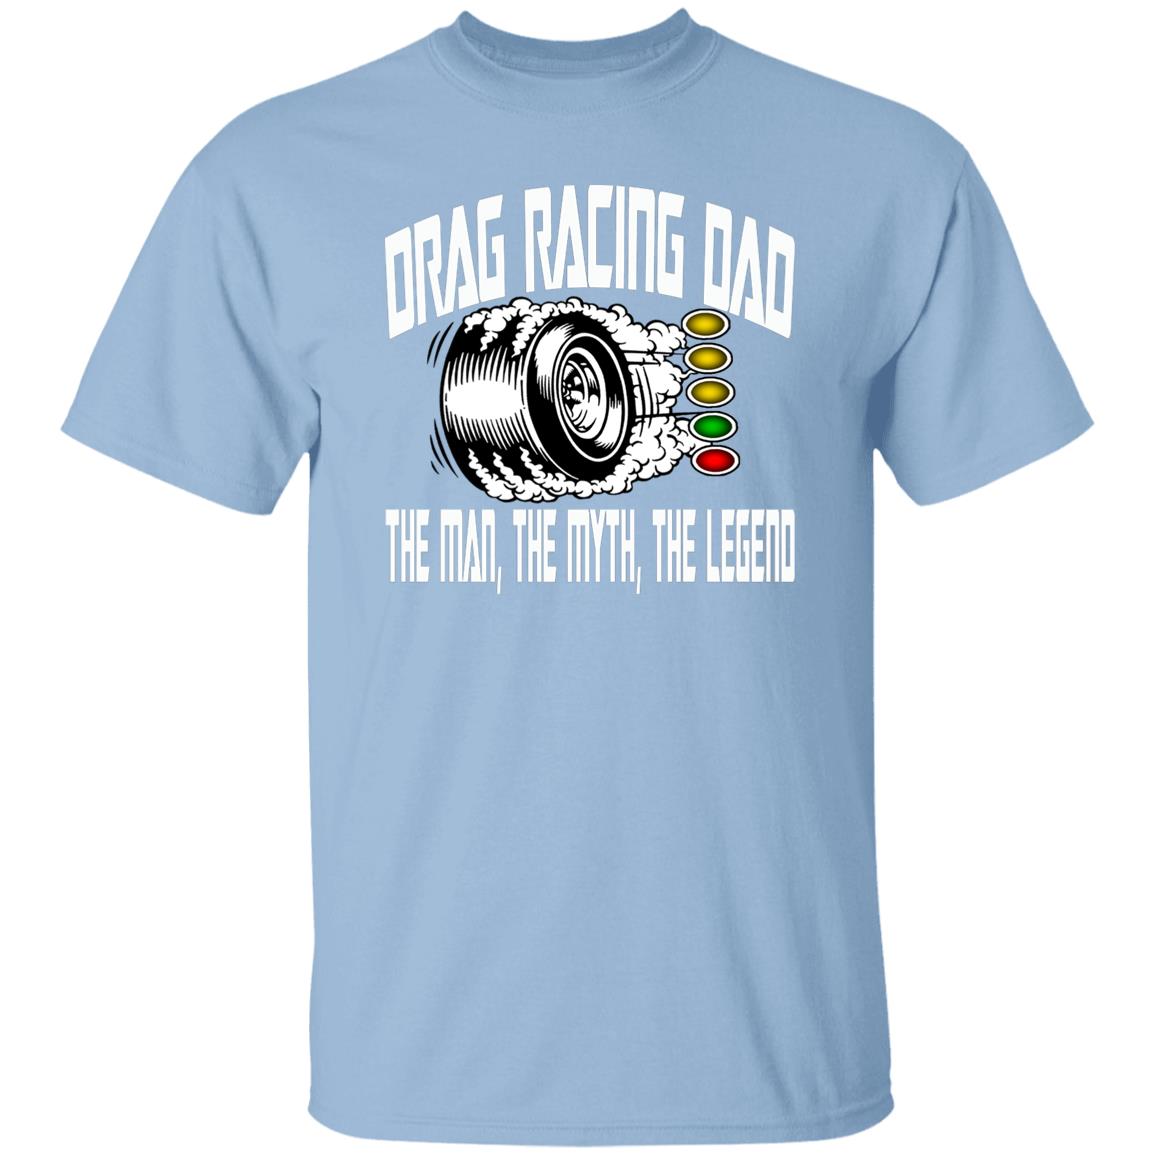 Drag Racing Dad 5.3 oz. T-Shirt